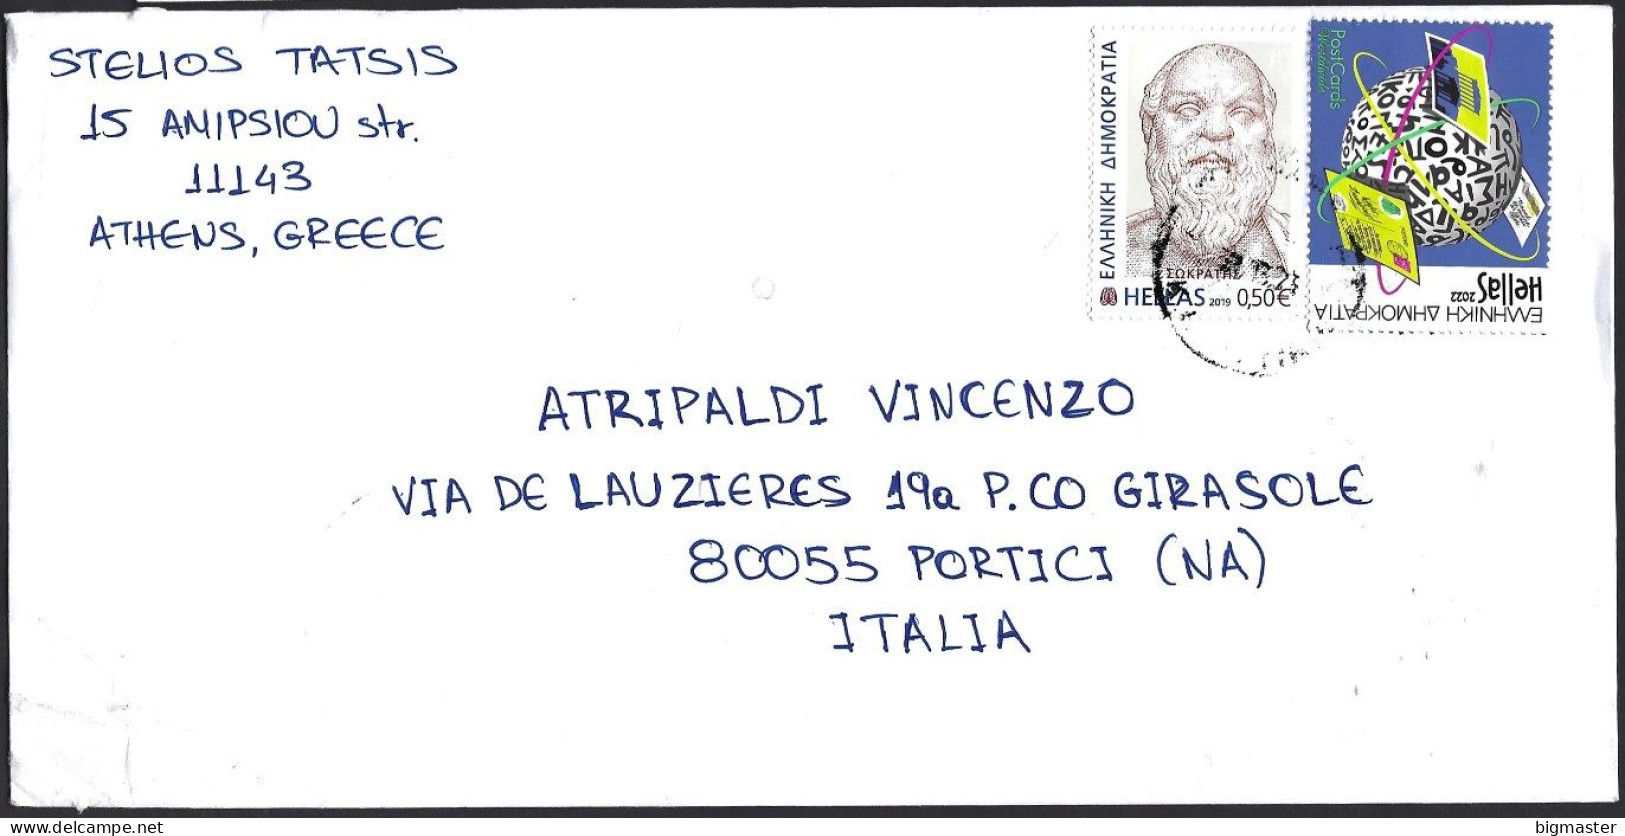 Str. EU-Grecia SP 2023 Postamail For Italy  2 VAL.fu - Storia Postale